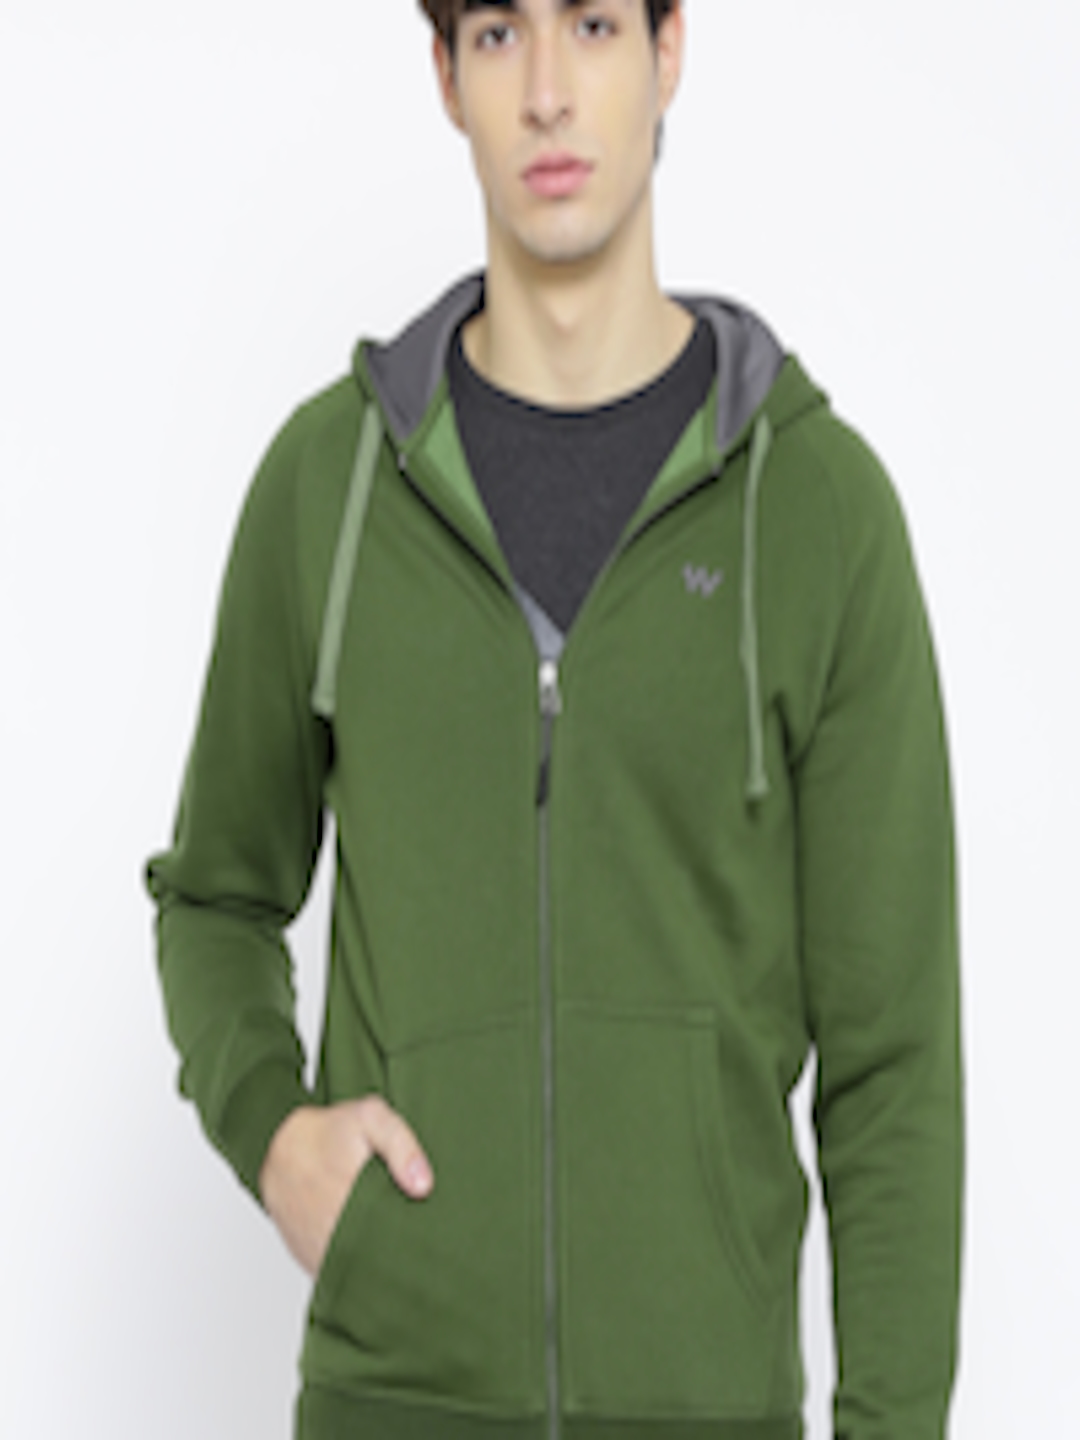 Buy Wildcraft Green Hooded Sweatshirt - Sweatshirts for Men 999781 | Myntra